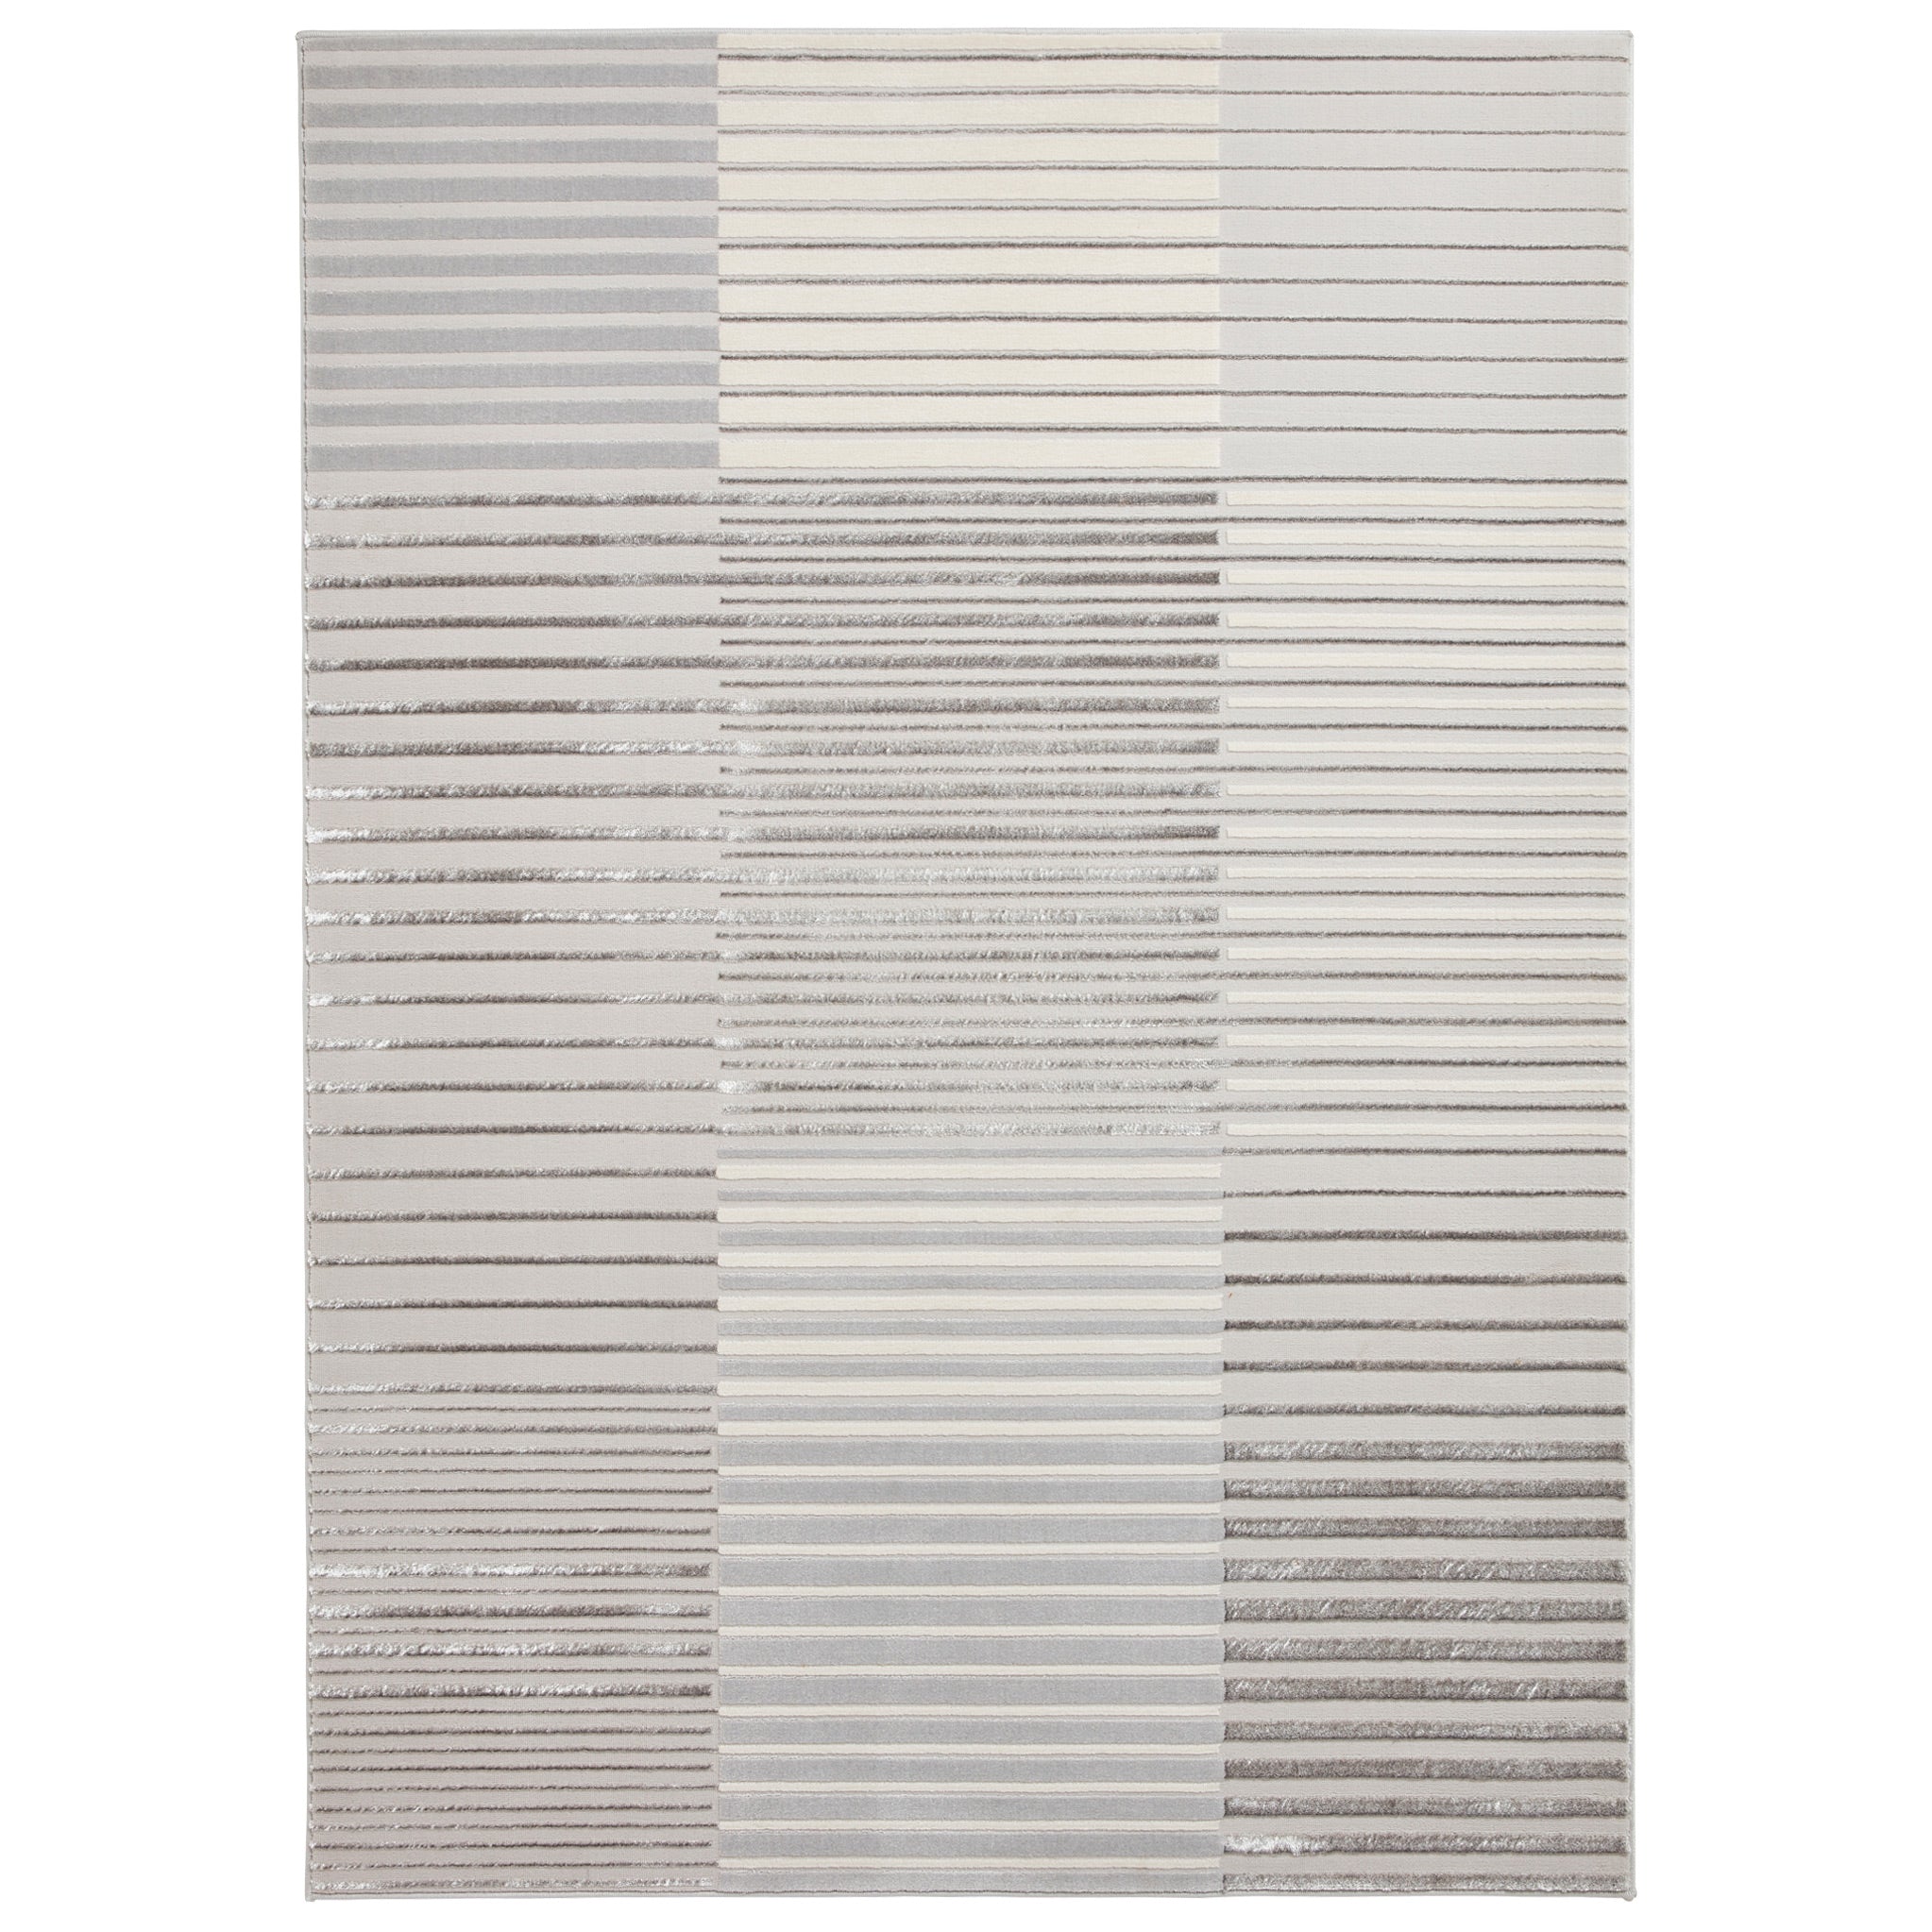 Aldrin Grey Striped Patterned Rectangular Rug For Living Room Or Bedroom